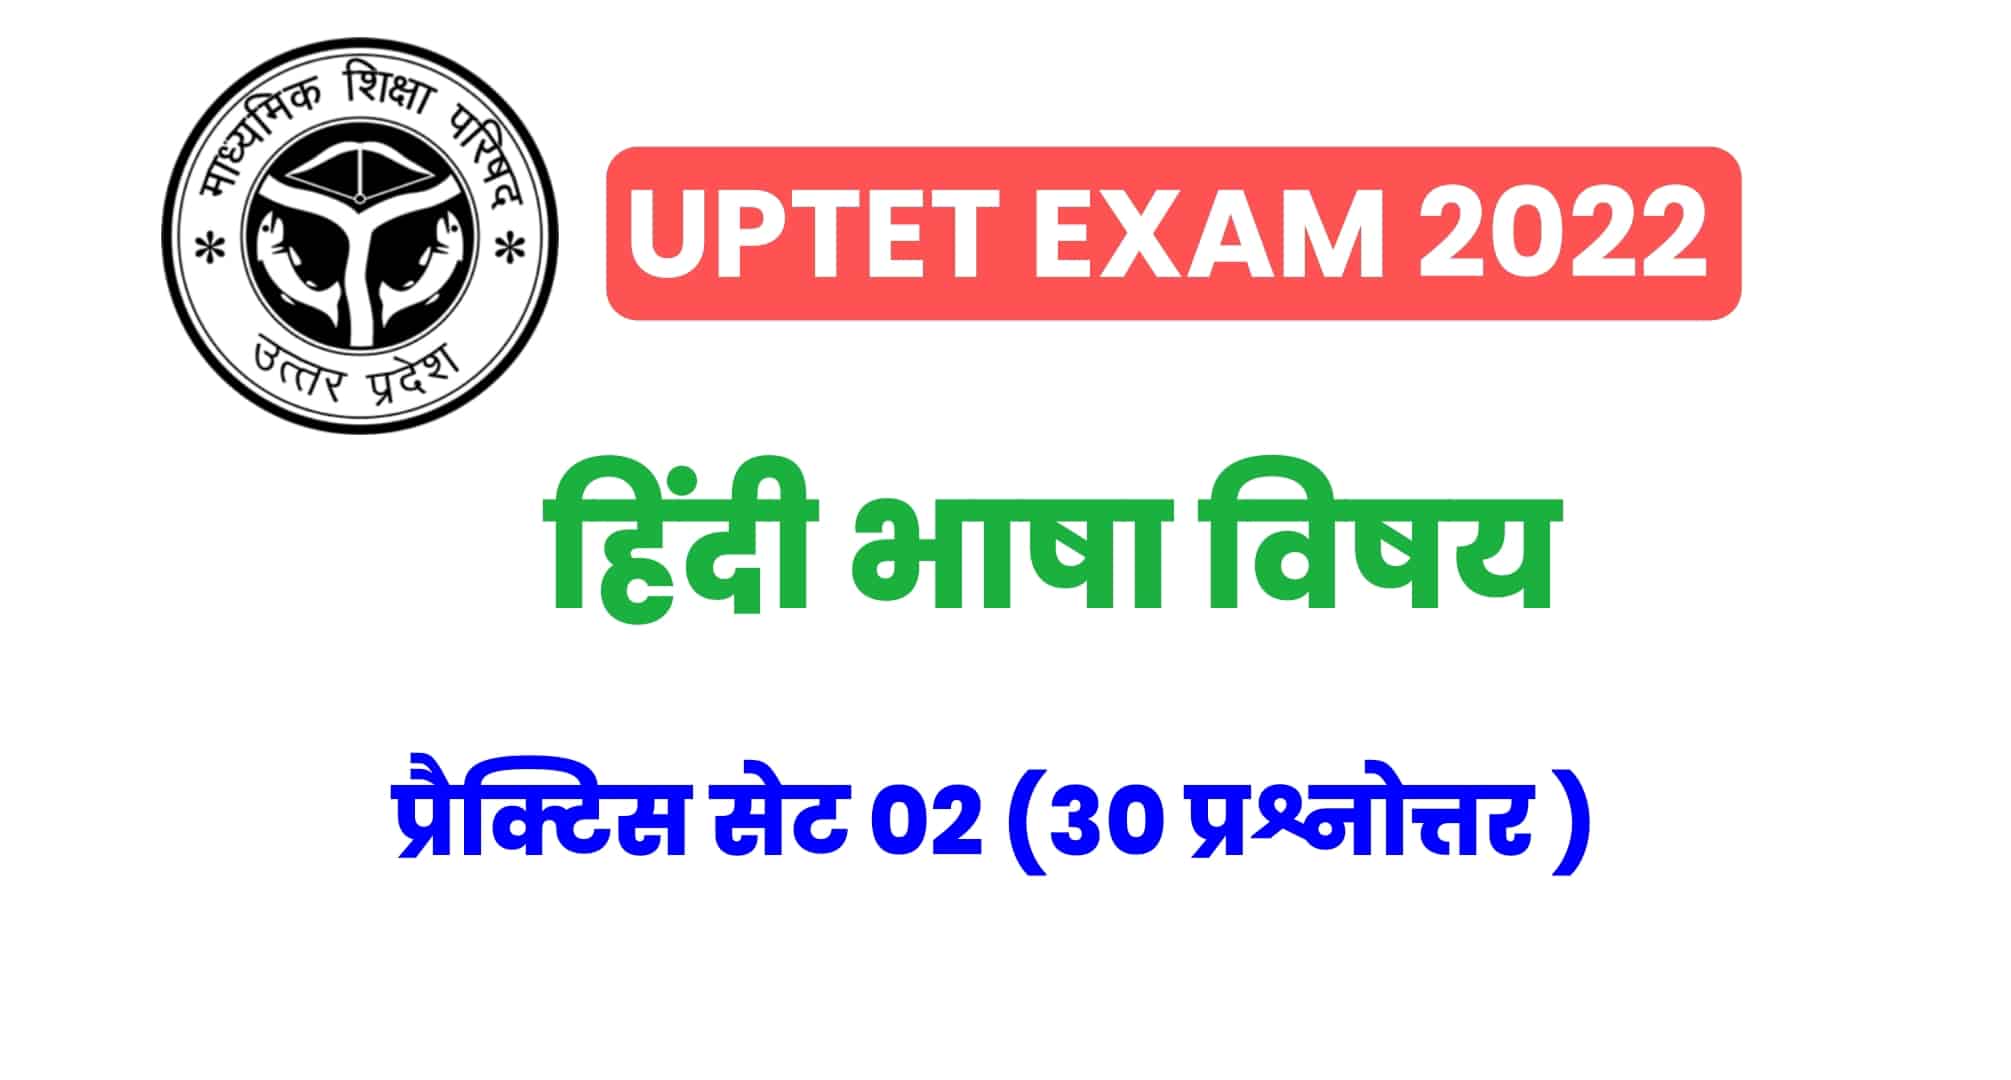 UPTET हिंदी विषय प्रैक्टिस सेट 02 : UPTET की परीक्षा में कई बार पूछे गए इन प्रश्नों को जरूर पढ़ें